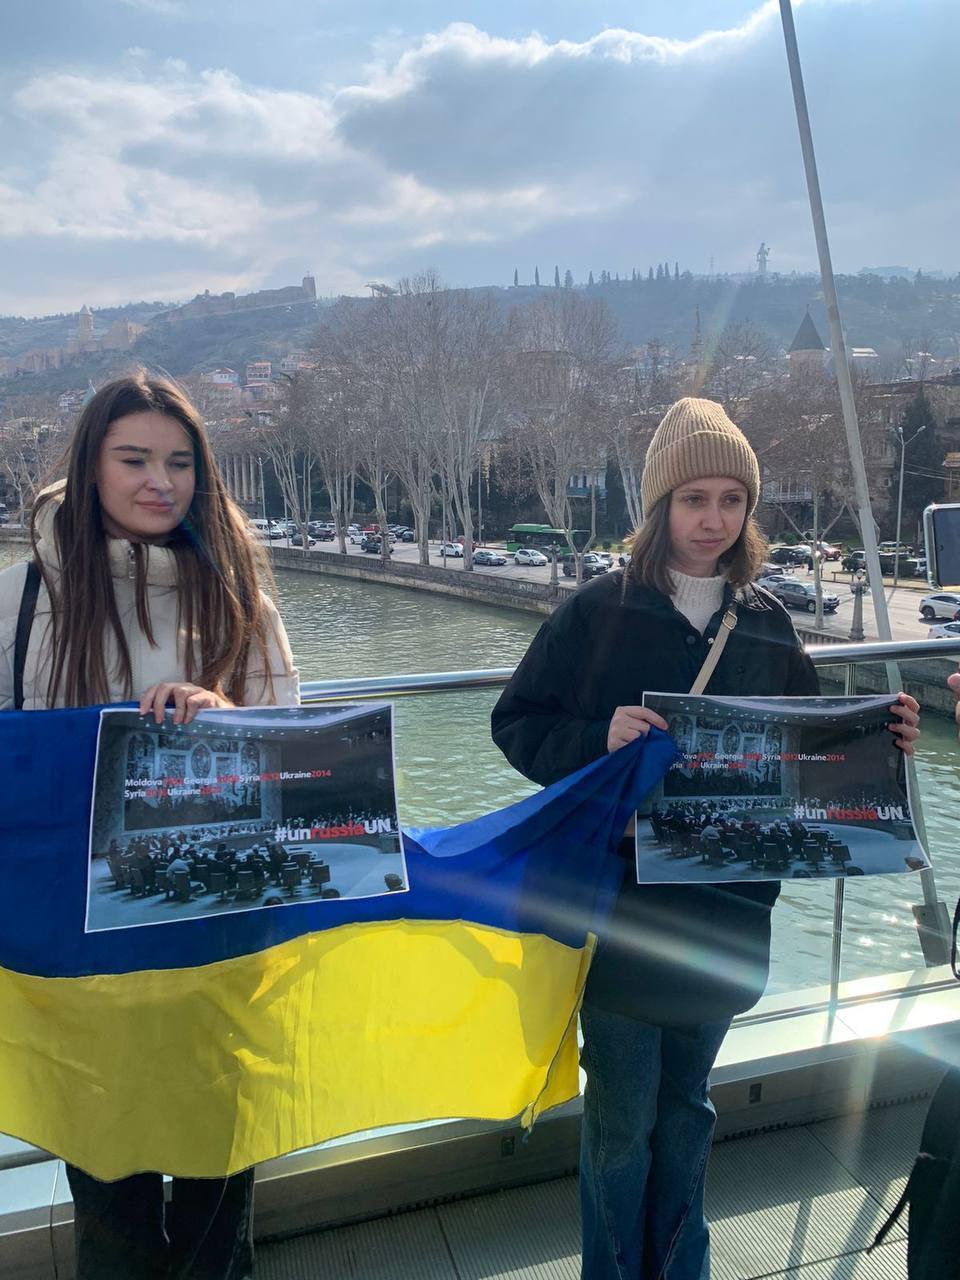 "Заставить Россию заплатить": в Тбилиси активисты напомнили, что РФ занимает незаконное место в ООН